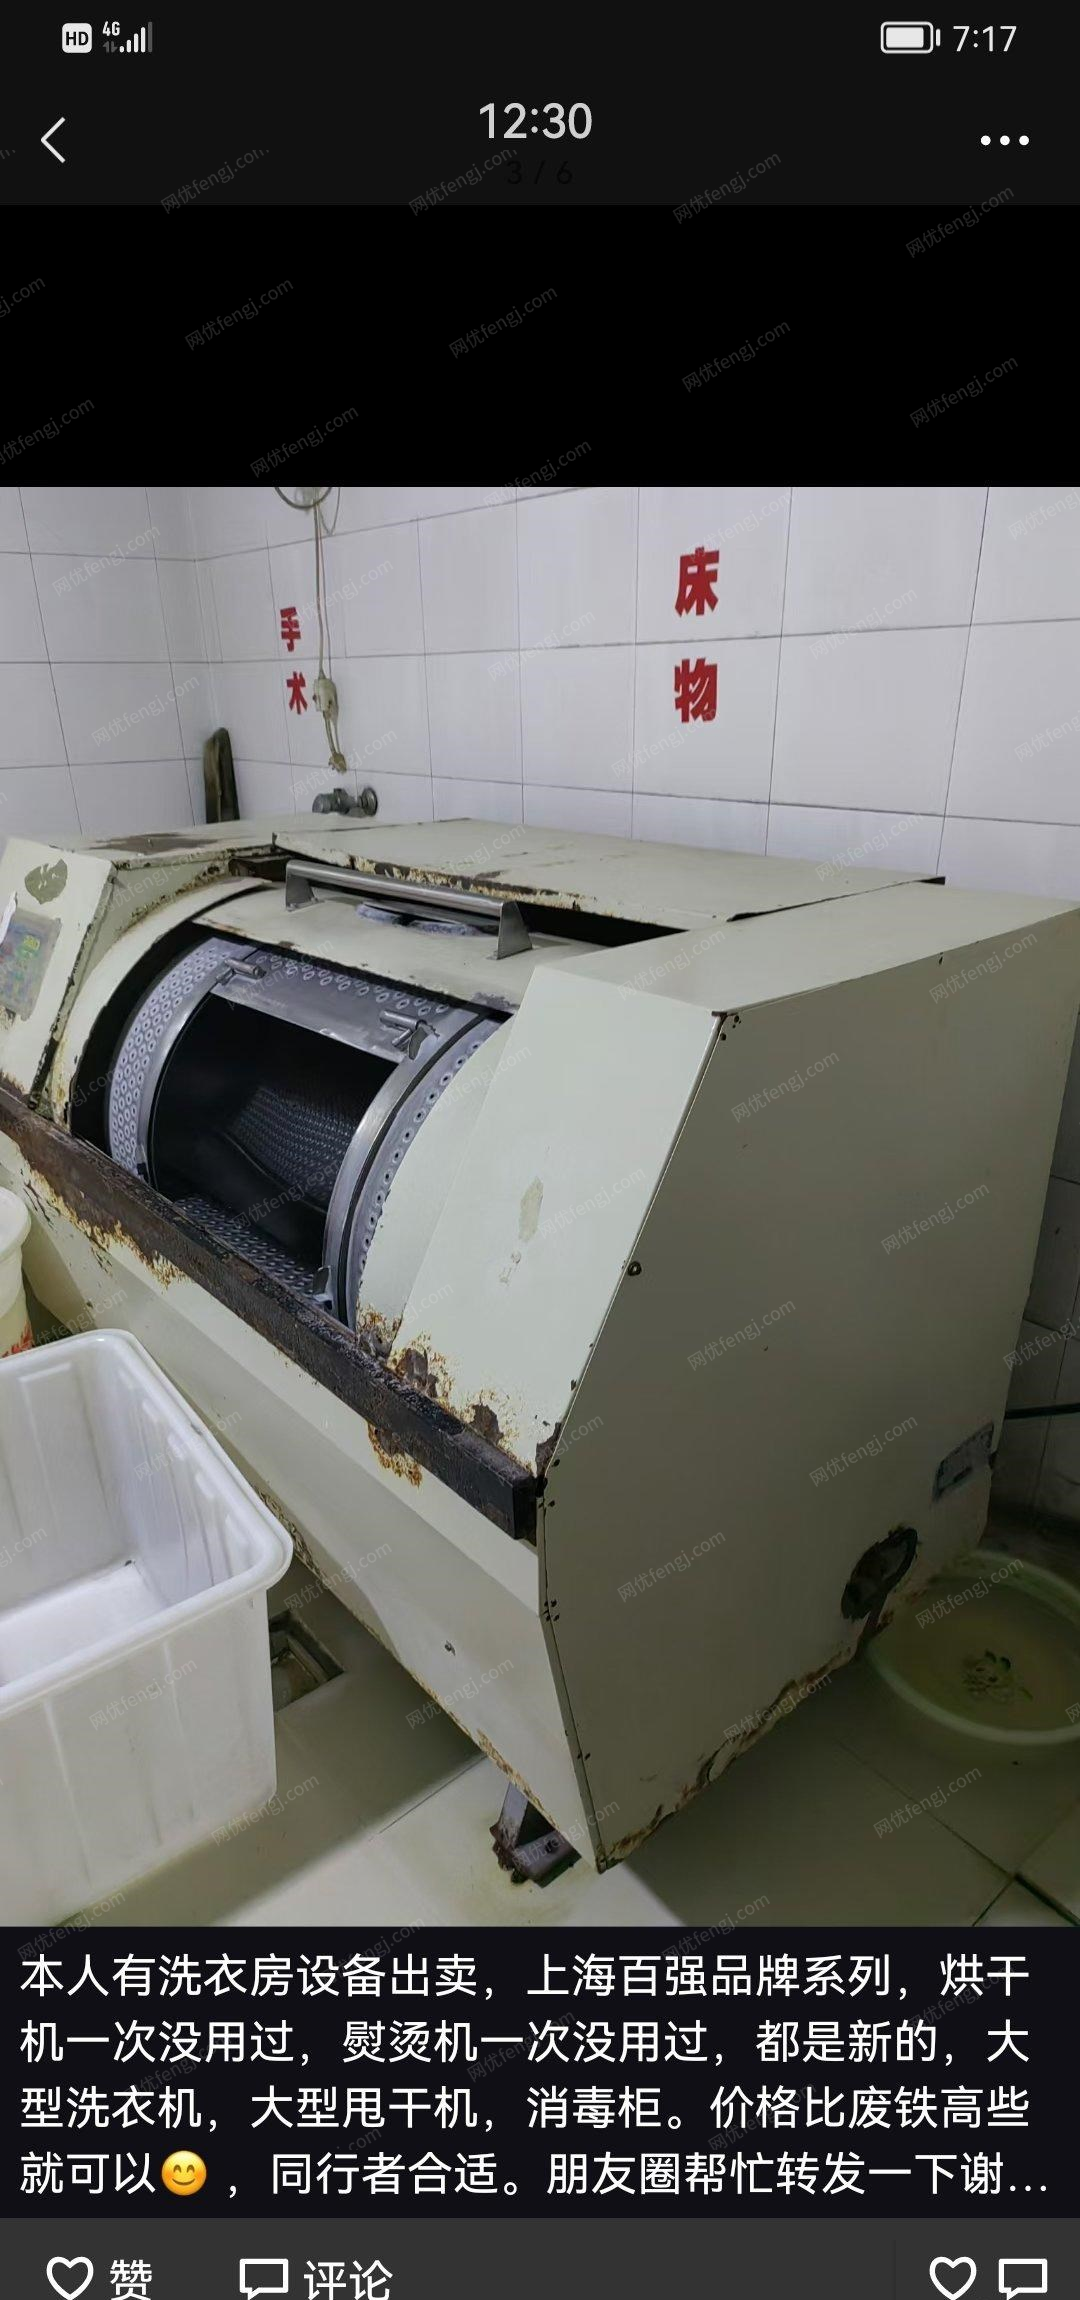 黑龙江哈尔滨自己洗衣店不做啦出售洗衣设备